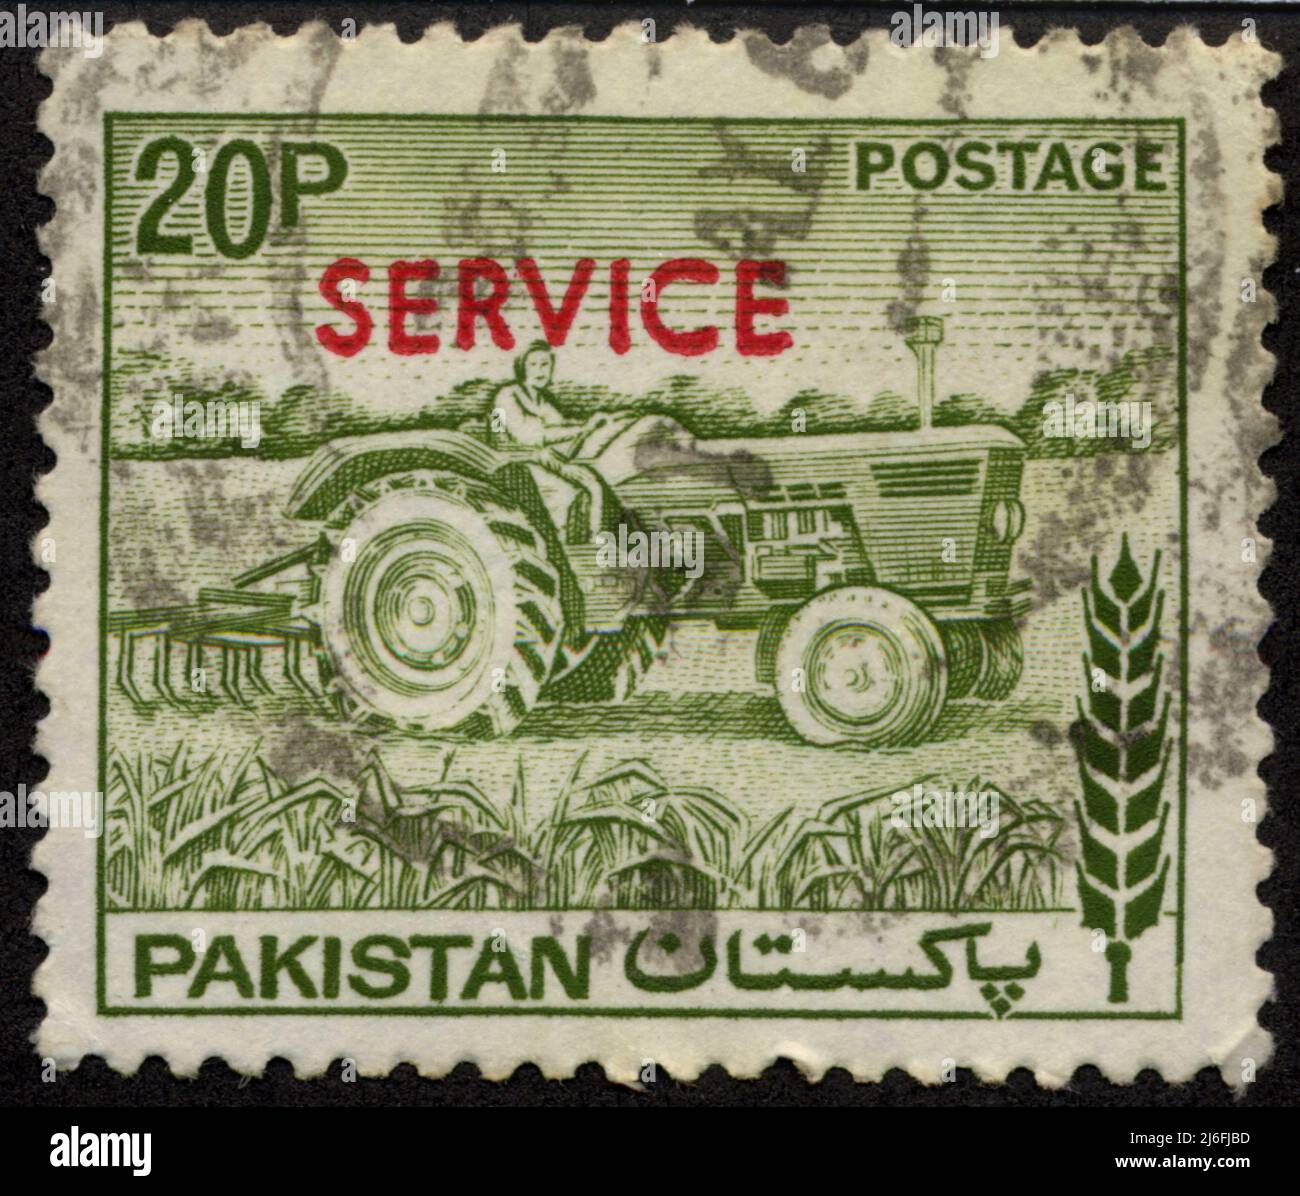 Timbre oblitéré Pakistan, 20p, affrancatura, servizio, Foto Stock